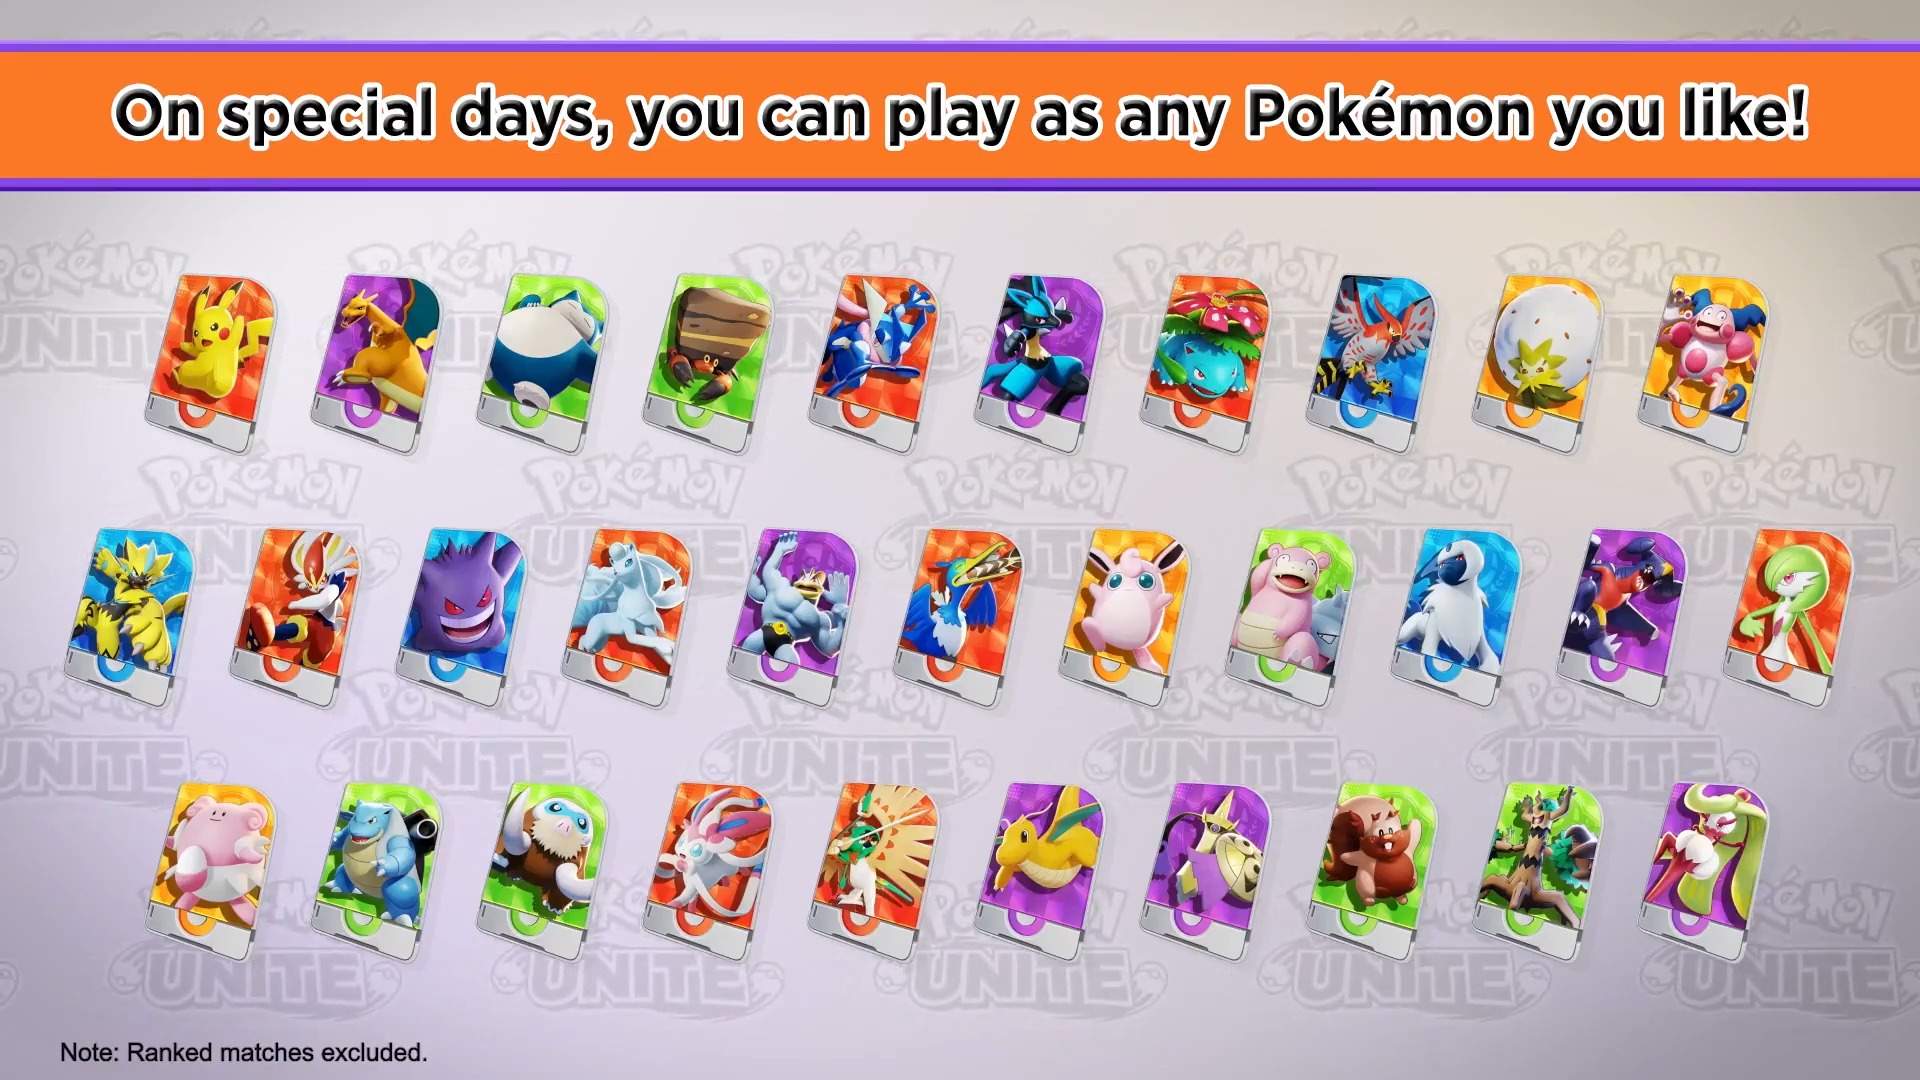 Pokémon Unite - Saiba todos os Pokémon Disponíveis até o momento